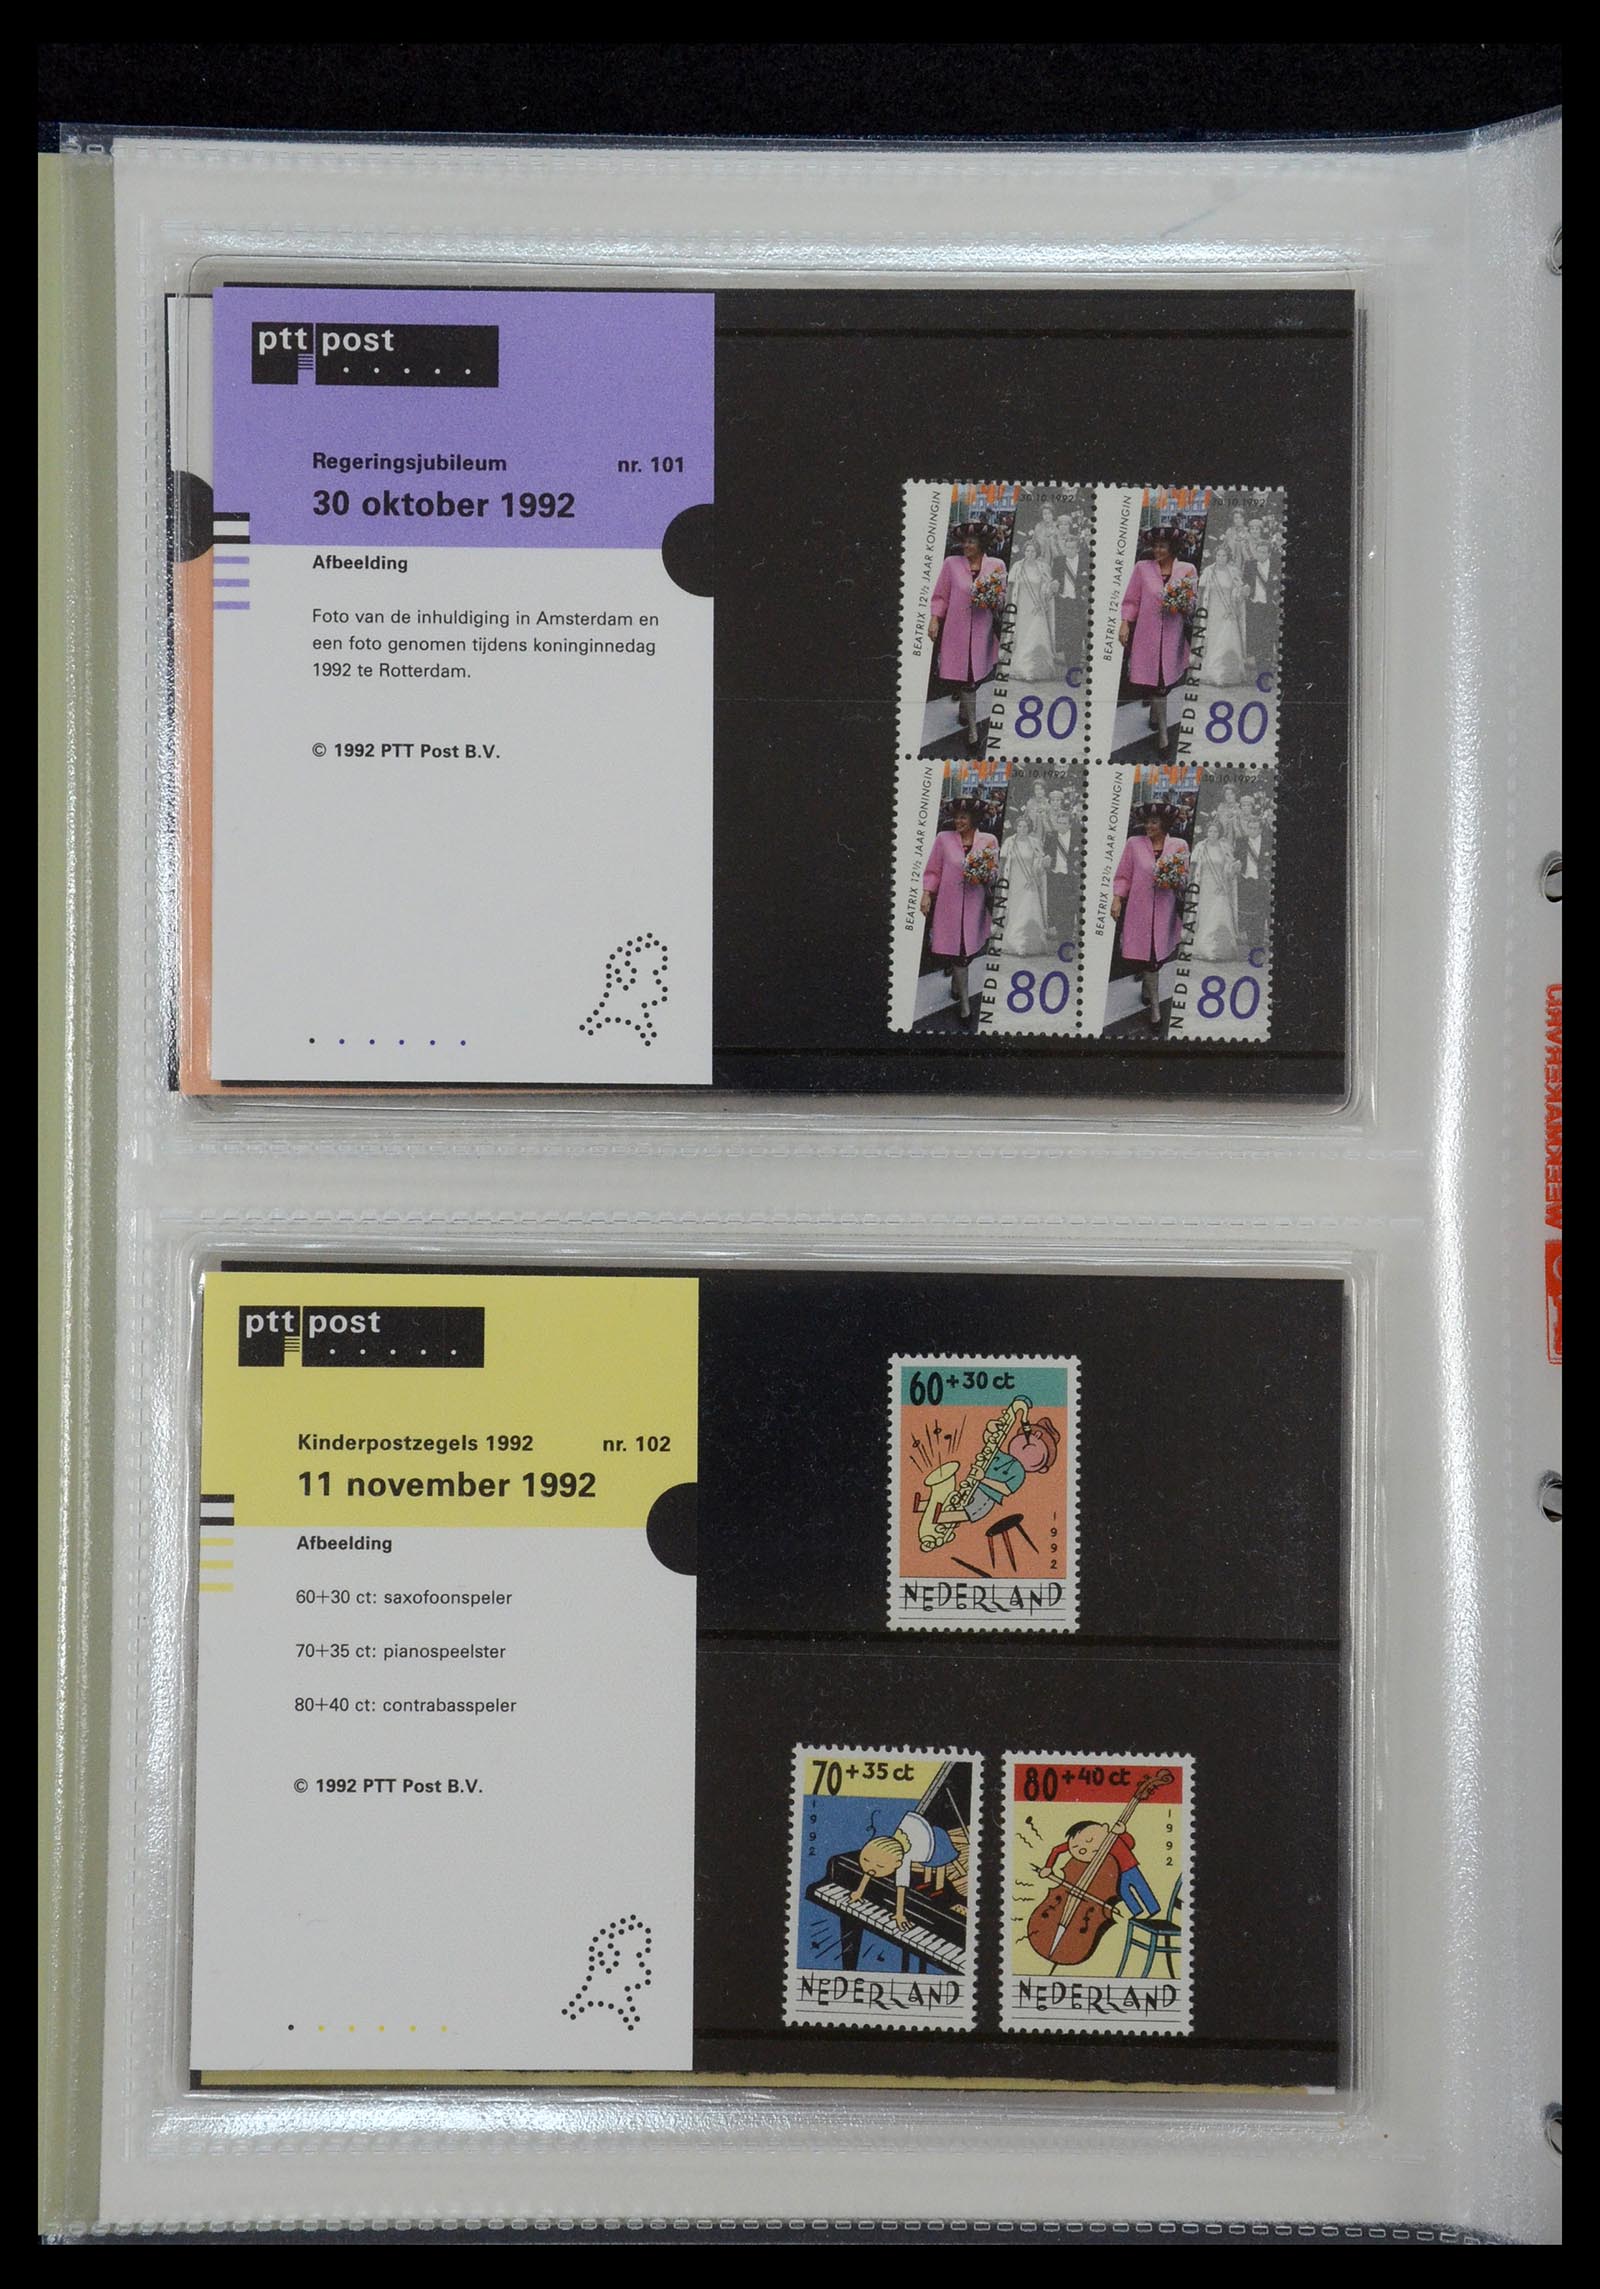 35144 052 - Stamp Collection 35144 Netherlands PTT presentation packs 1982-2021!